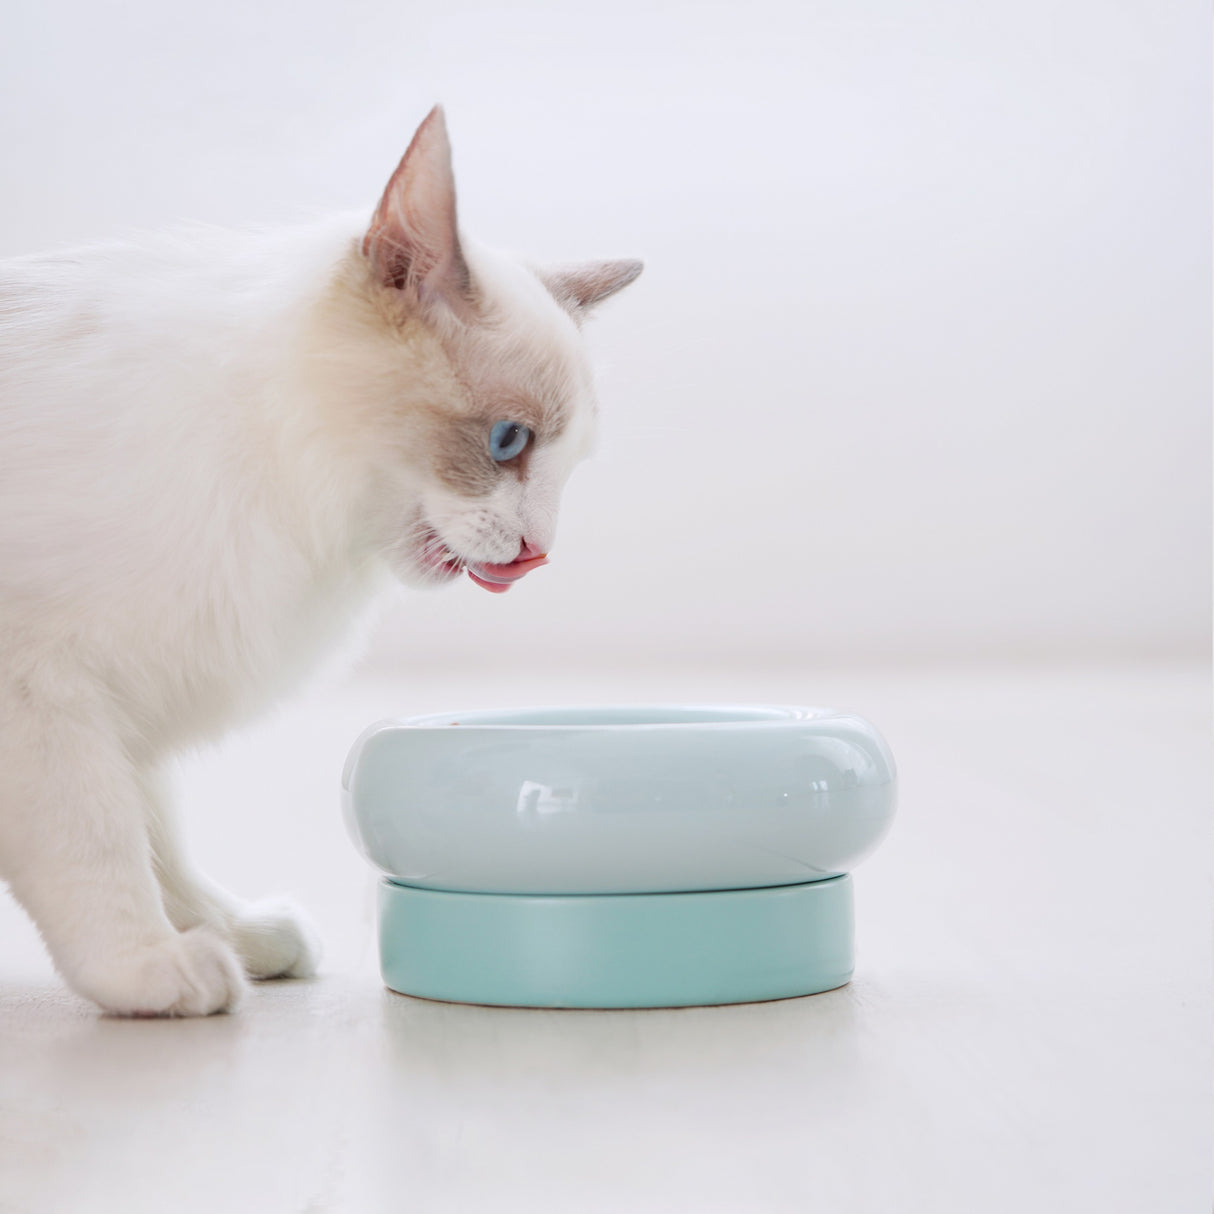 Katten voerbak - Drinkbak voor katten - Verhoogd ontwerp - One Size Fits All - Kleur Blauw - 16.6x16.6x8cm (LxBxH) SpirePets